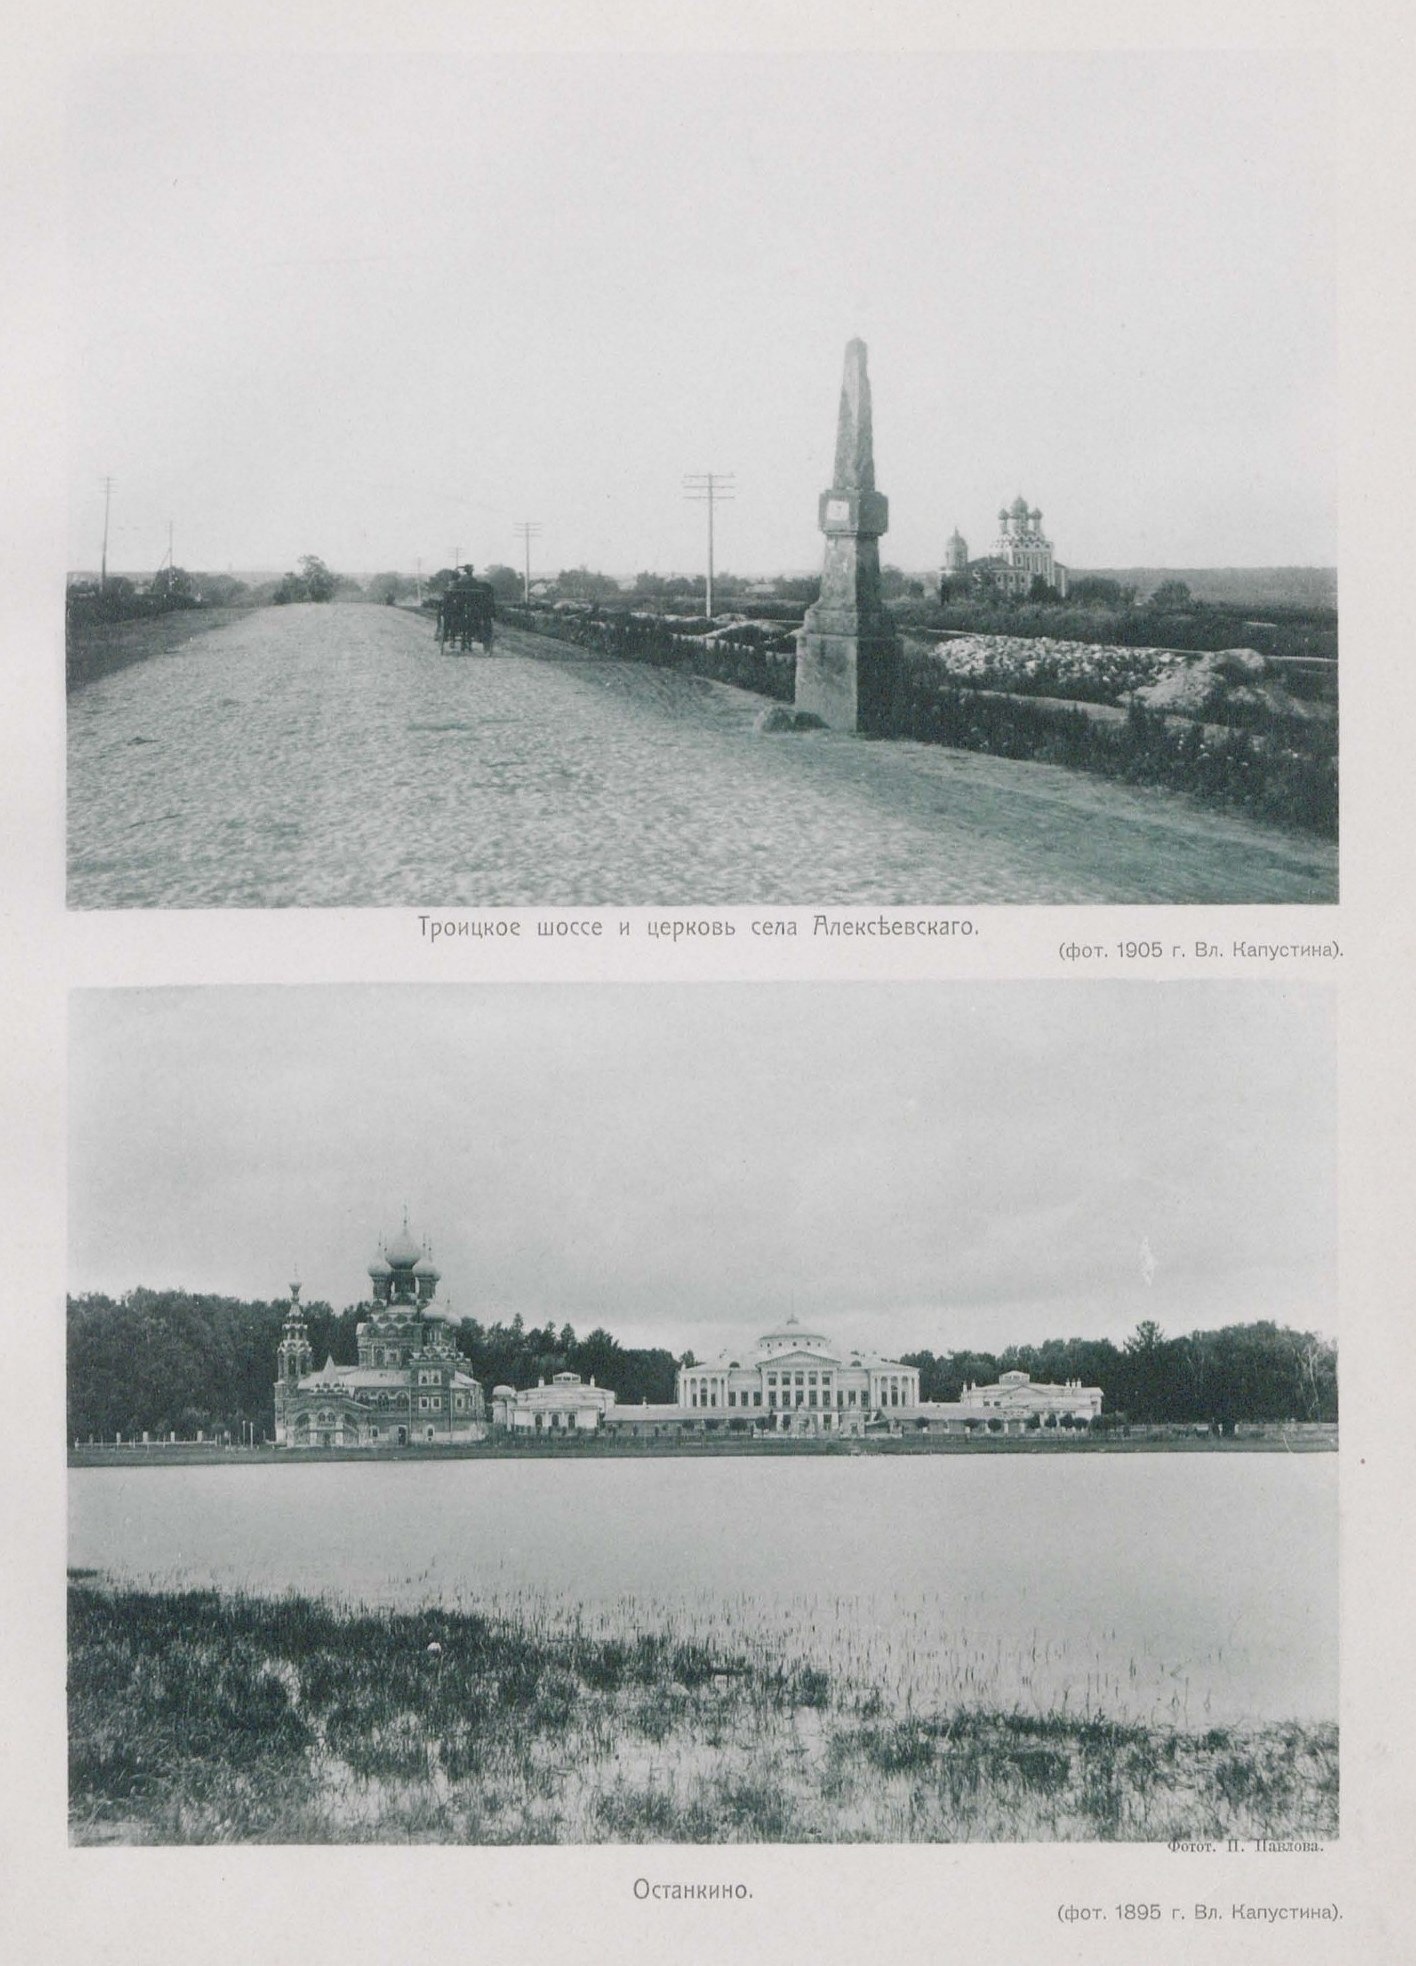 Троицкое шоссе в 1905 г. Останкино в 1895 г.